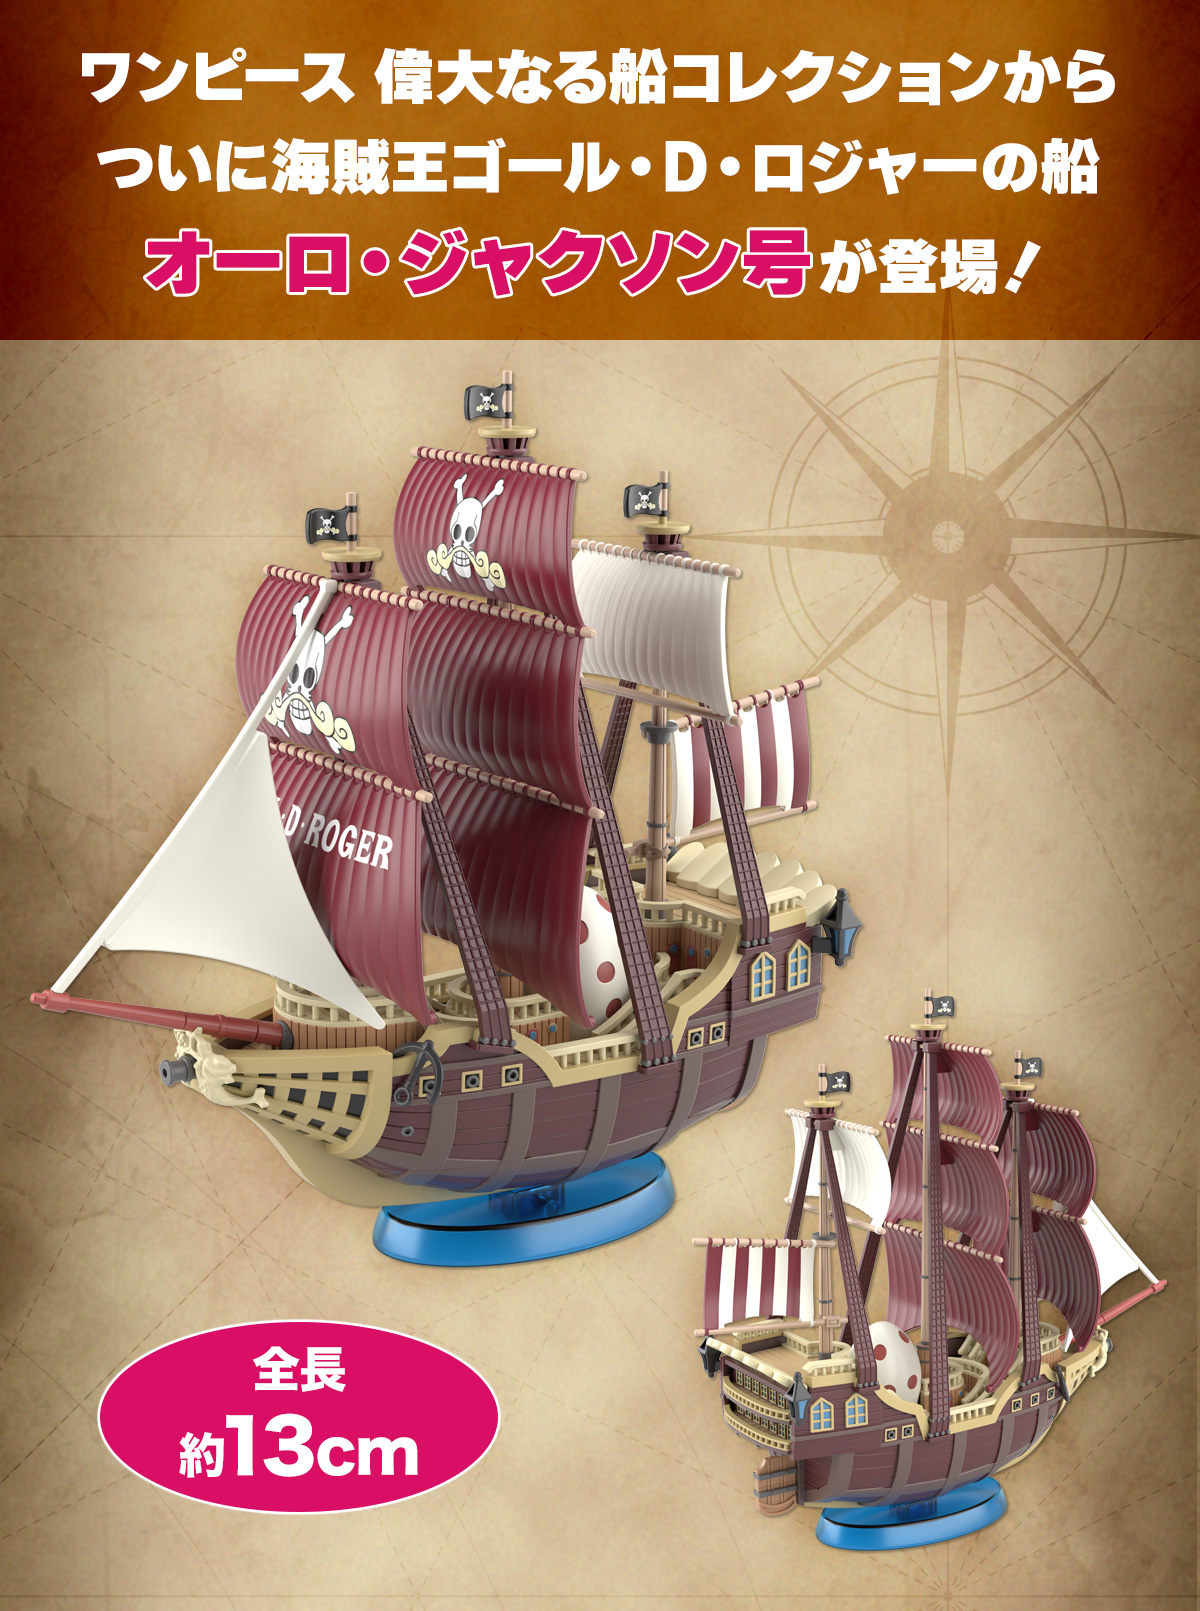 ワンピース 偉大なる船コレクションからついに海賊王ゴール・D・ロジャーの船オーロ・ジャクソン号が登場！